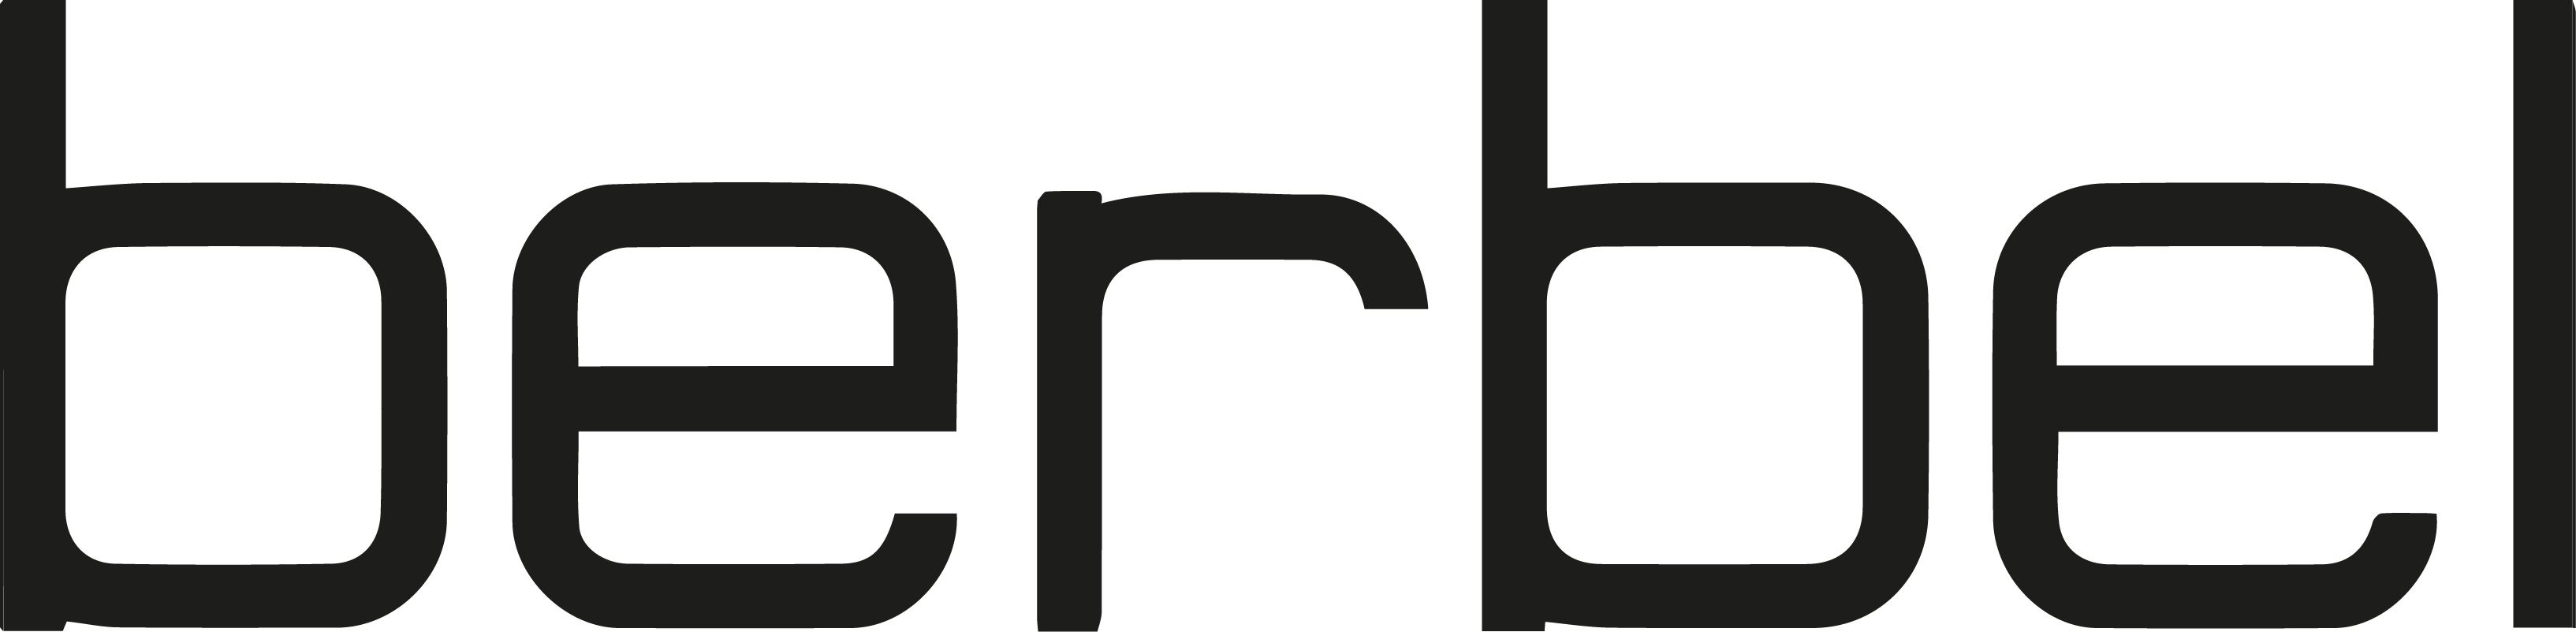 berbel_Logo.png